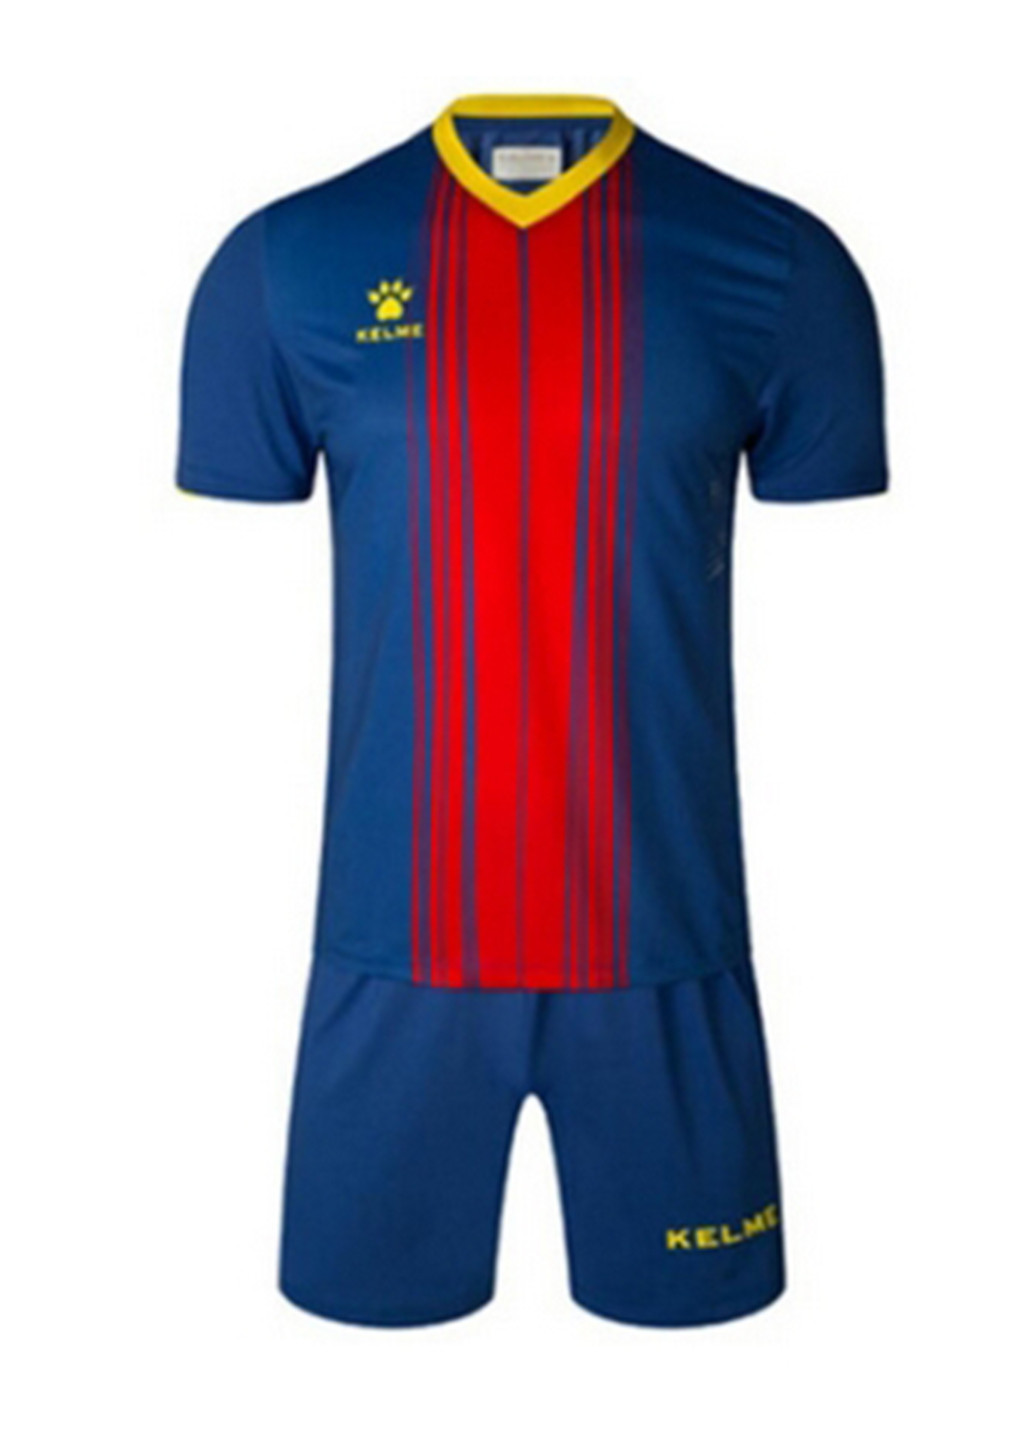 Синий демисезонный комплект футбольной формы barcelona синий красный к/р Kelme